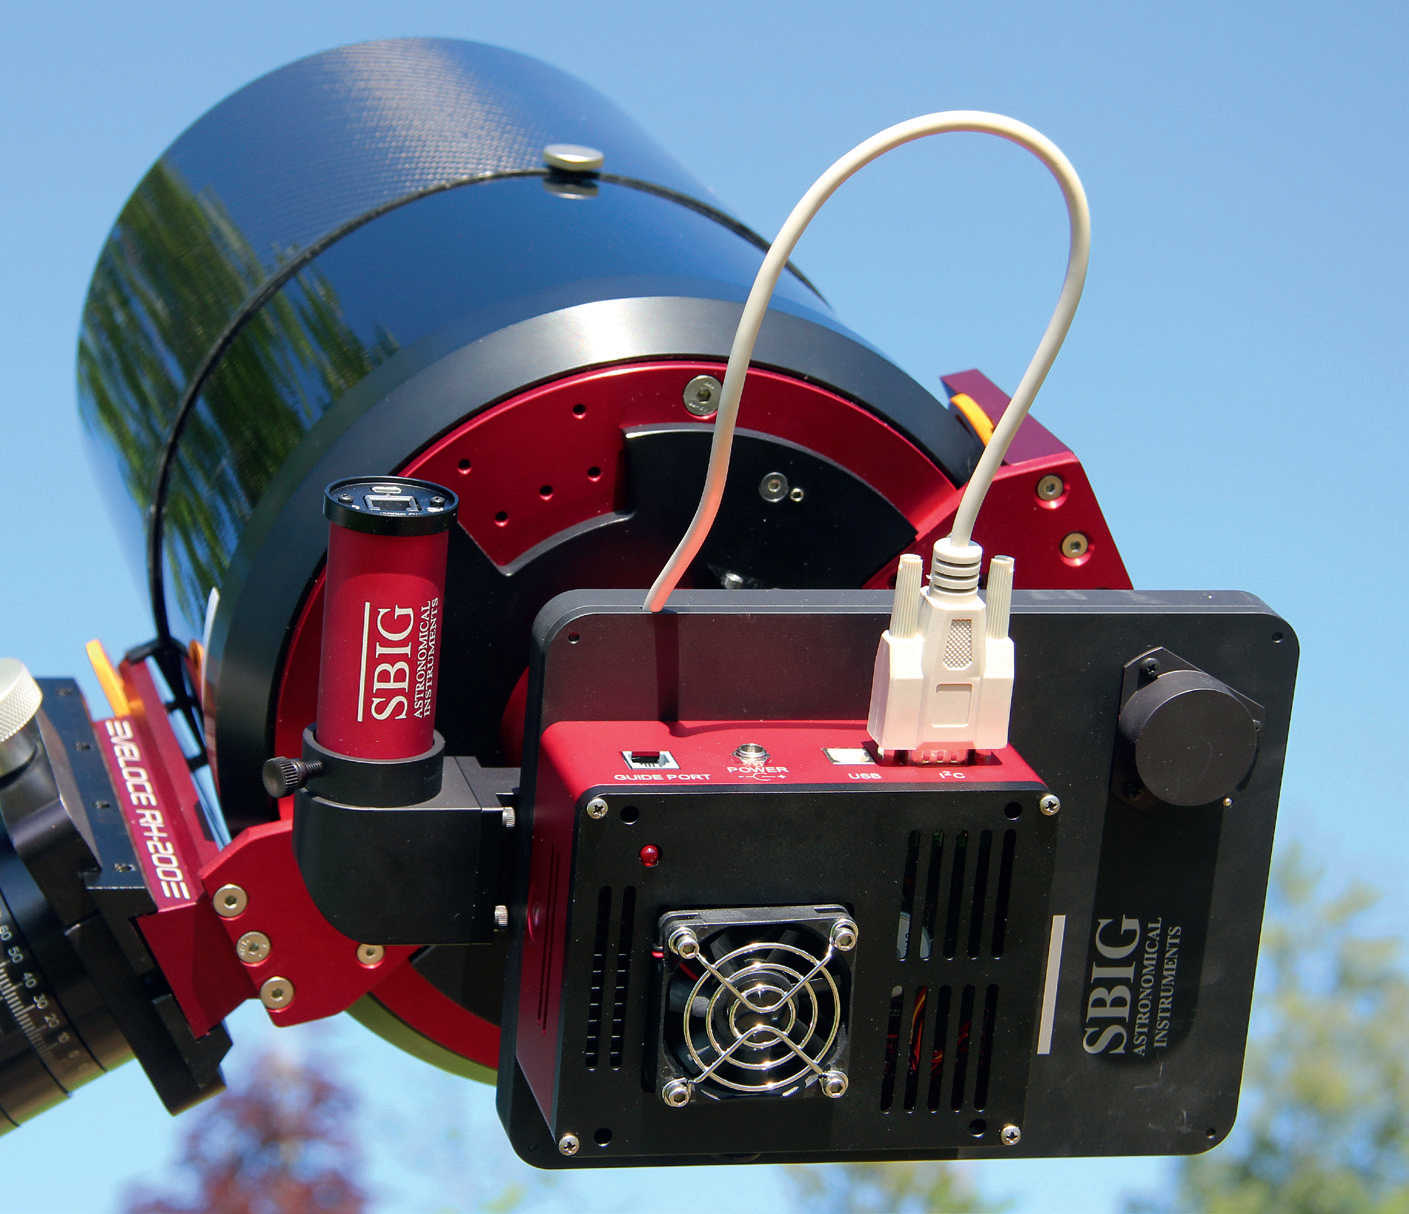 Chłodzona kamera CCD na astrografie: pomiędzy teleskopem a kamerą (czerwono-czarna obudowa) widać (również czarne) koło filtrowe, a obok okrągłą kamerę prowadzącą (czerwoną), która jest umieszczona w torze wiązki optycznej poprzez guider off-axis. U. Dittler